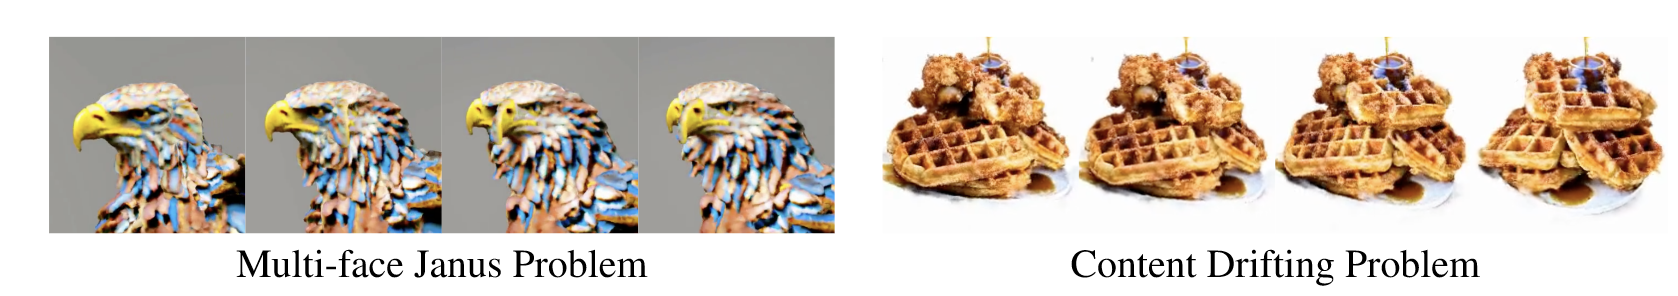 左：“A bald eagle carved out of wood”，鹰有两张脸。右：“a DSLR photo of a plate of fried chicken and waffles with maple syrup on them”，鸡肉逐渐变成了华夫饼。